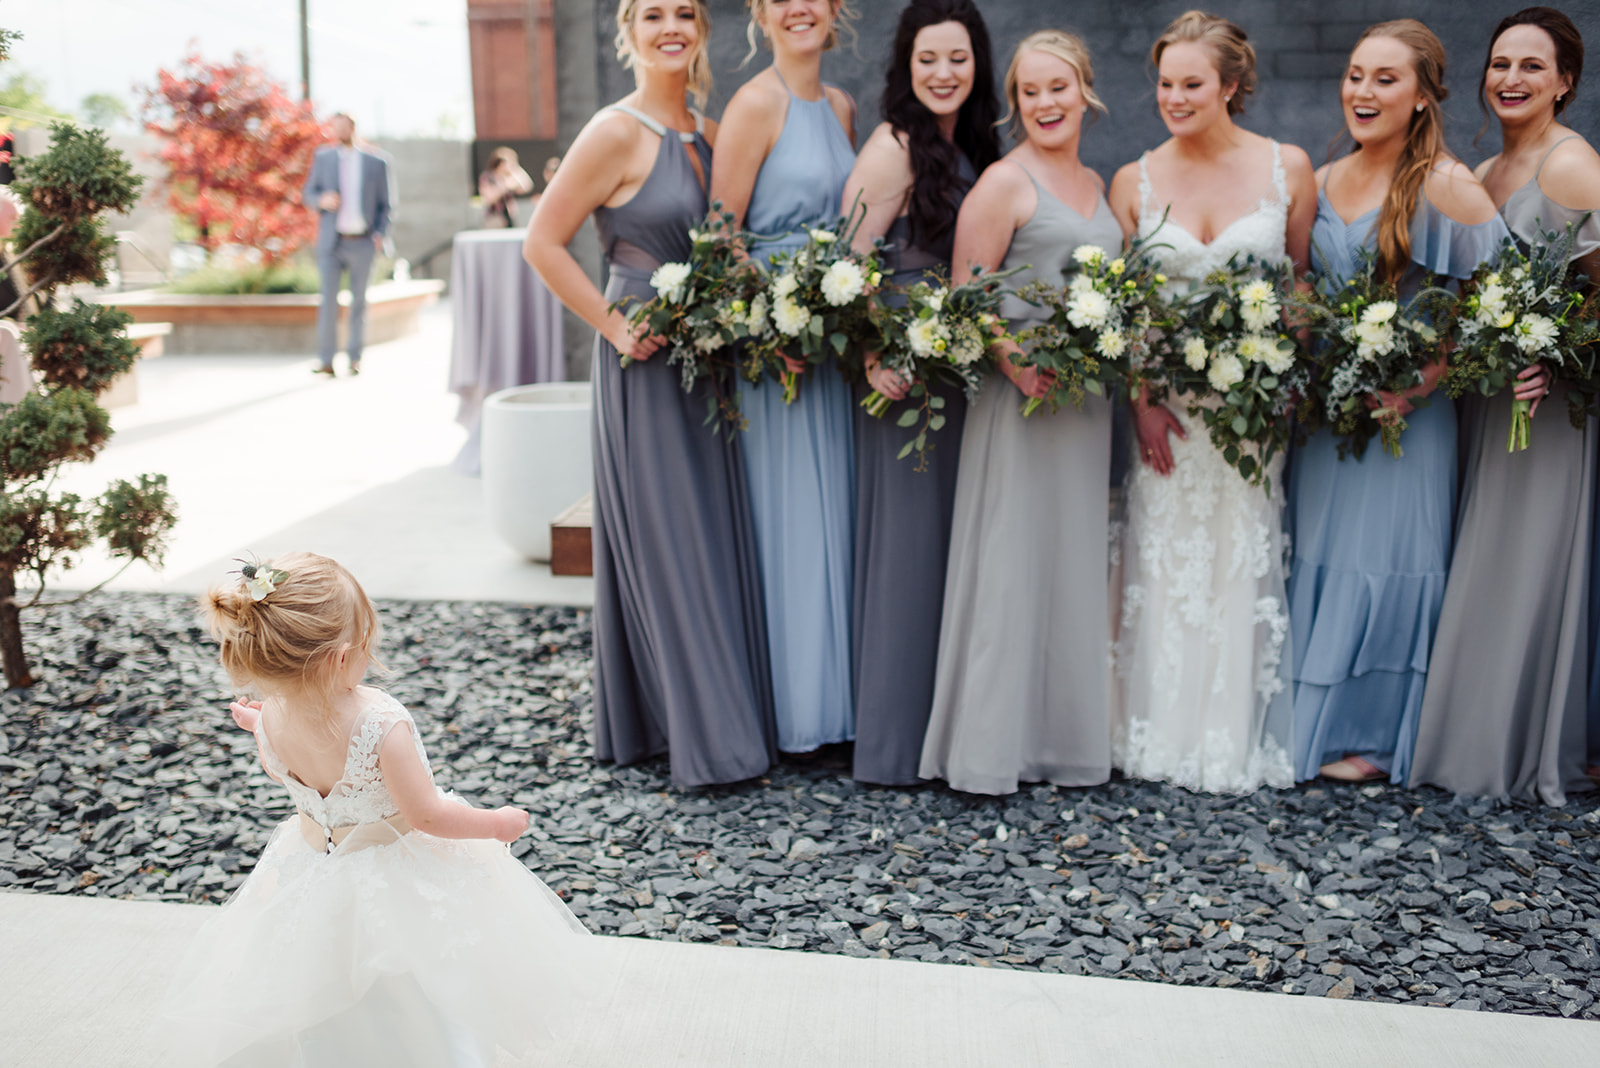 Flower girl photos: Nashville wedding at Clementine featured on Nashville Bride Guide